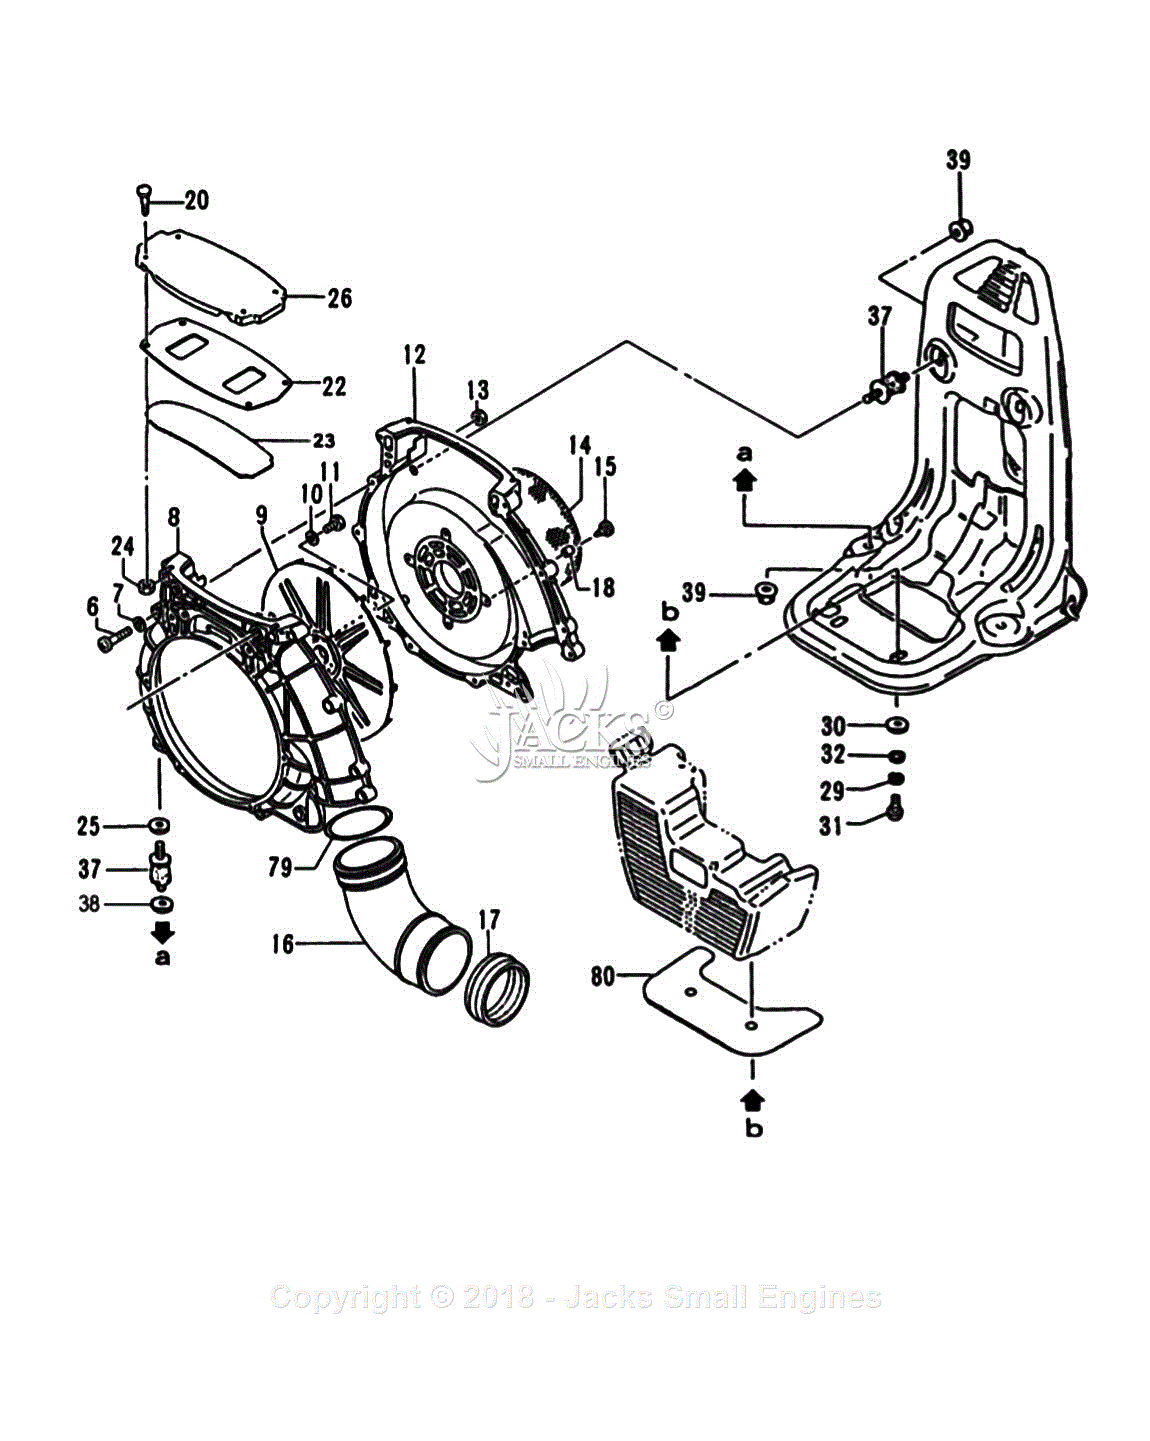 Tanaka TBL-4610 Parts Diagrams